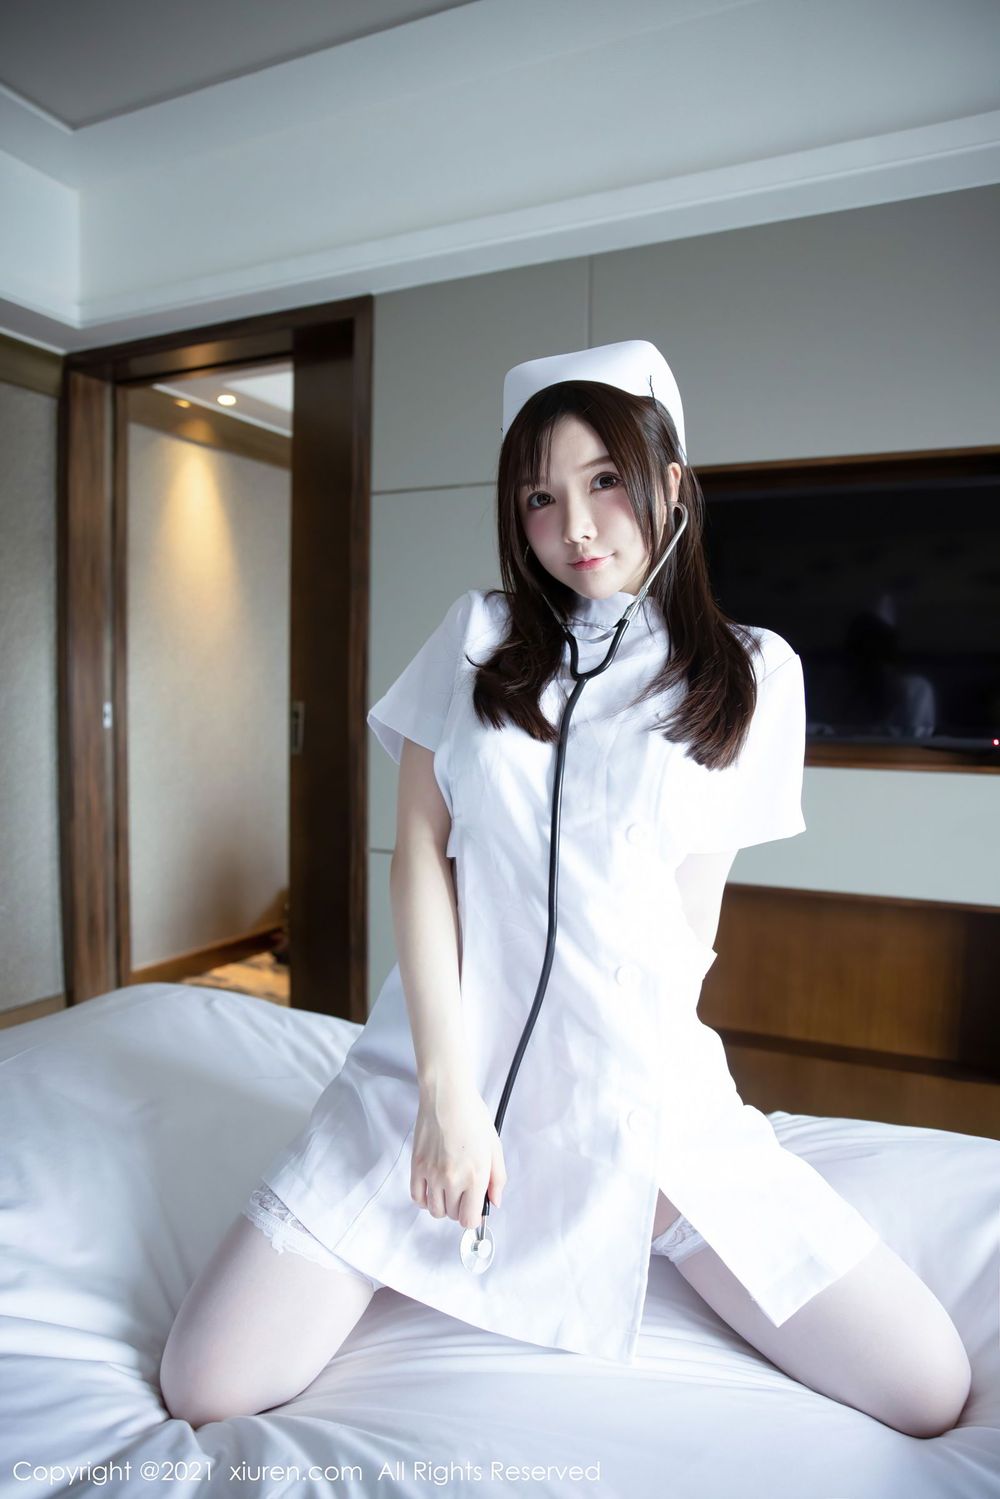 美女模特糯美子Mini洁白护士制服系列姿态诱人写真